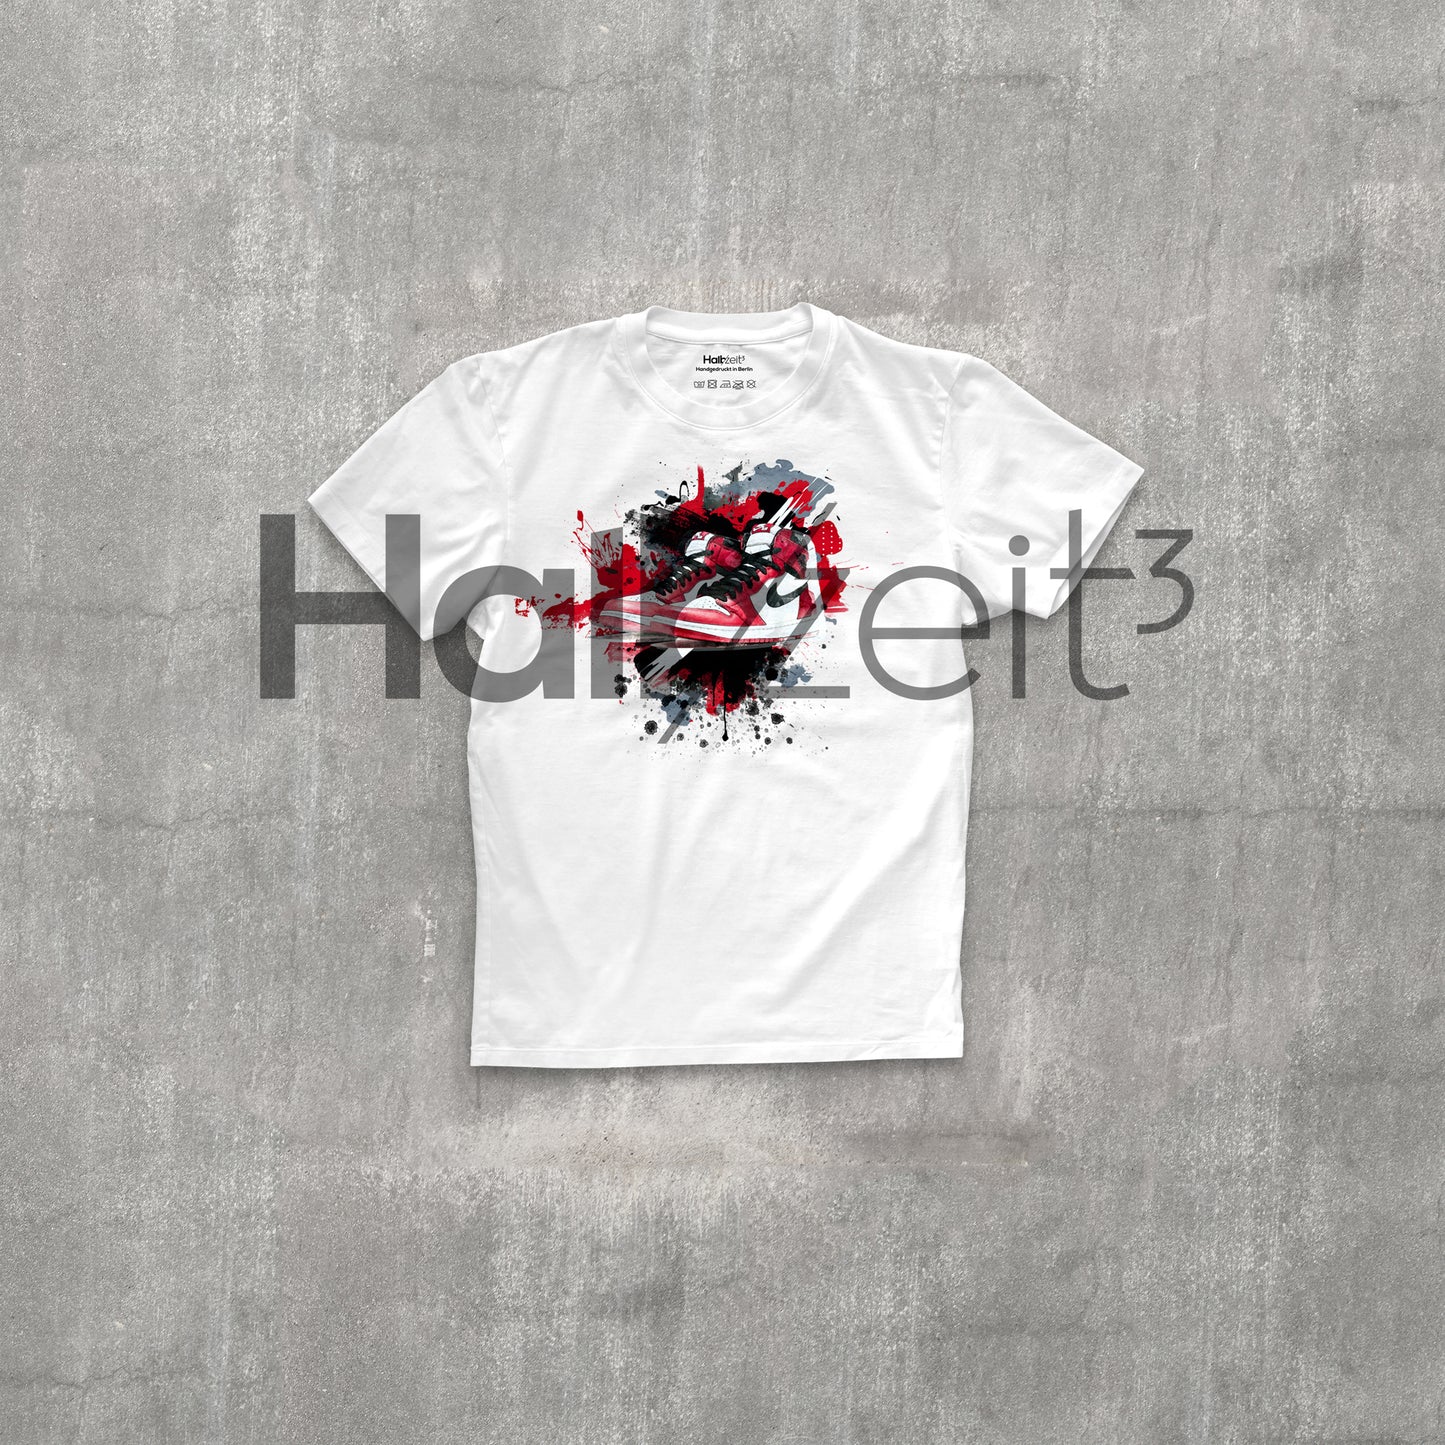 Halbzeit3 - T-Shirt AM 1 white